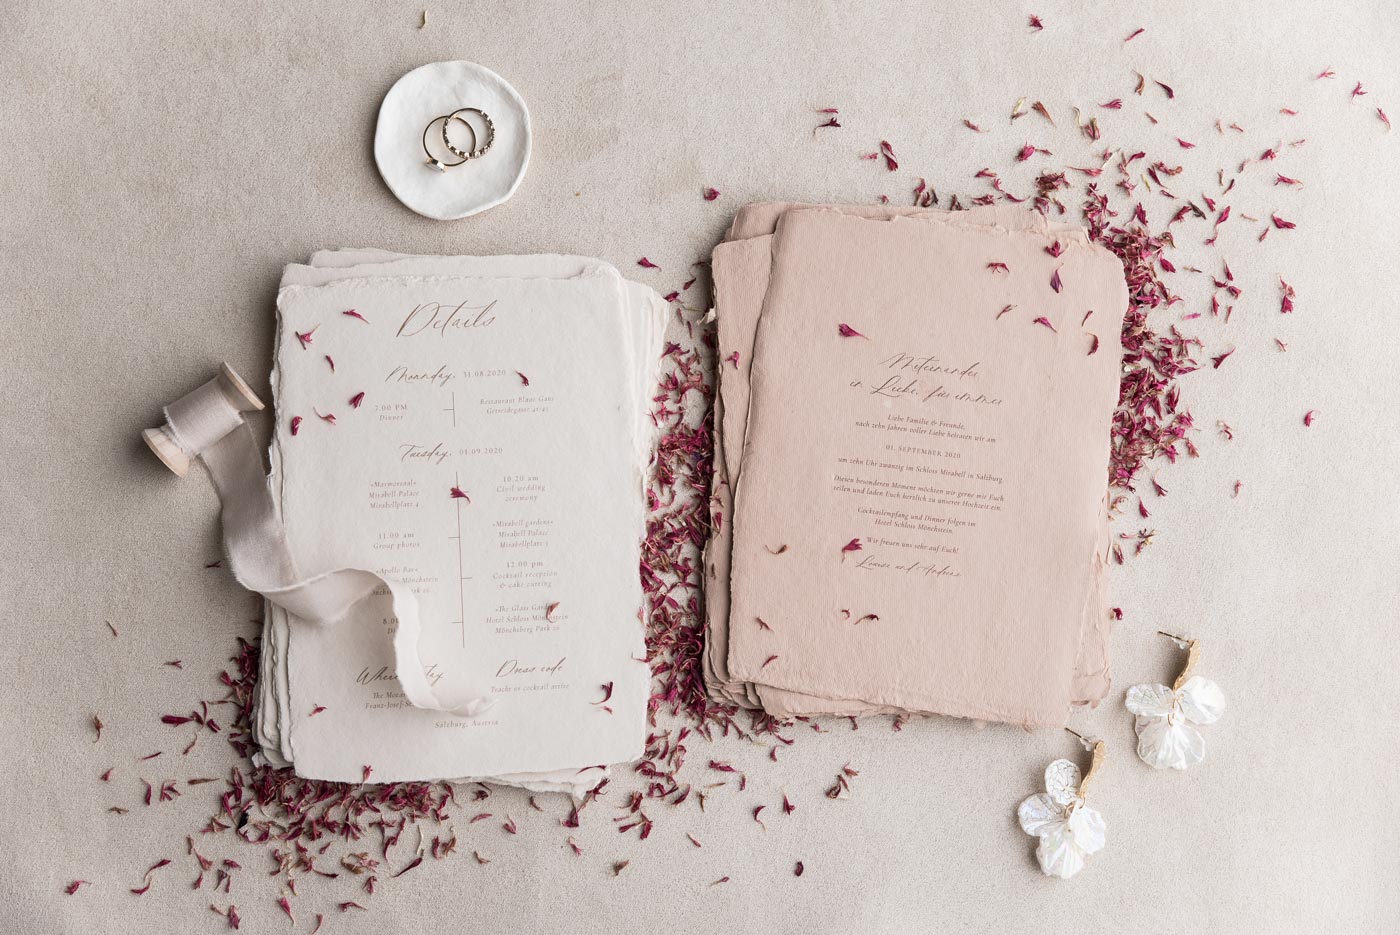 Individuelles Einladungsset aus handgerissenes Papier in Dusty Rose und weiß mit ablaufplan dekoriert mit Trockenblumen, roten Kornblumen